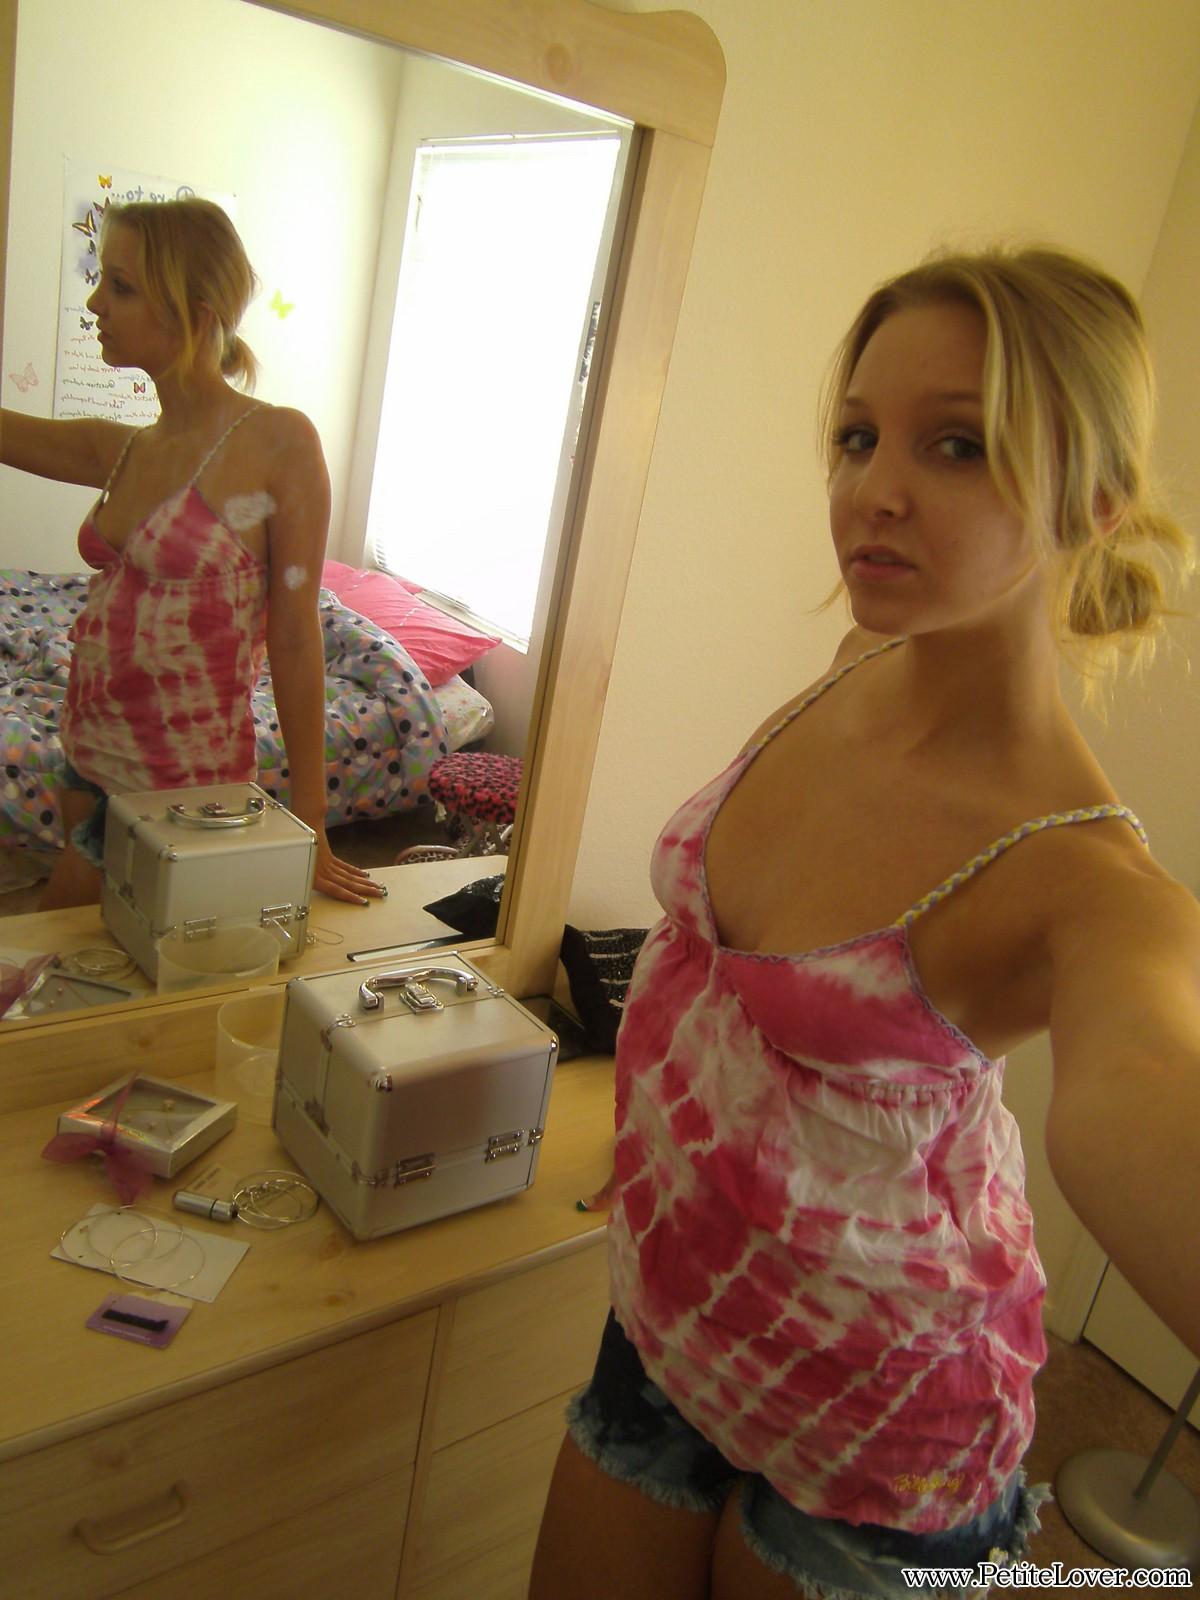 La teenager bionda elle si fa dei selfie in topless per voi allo specchio
 #54160187